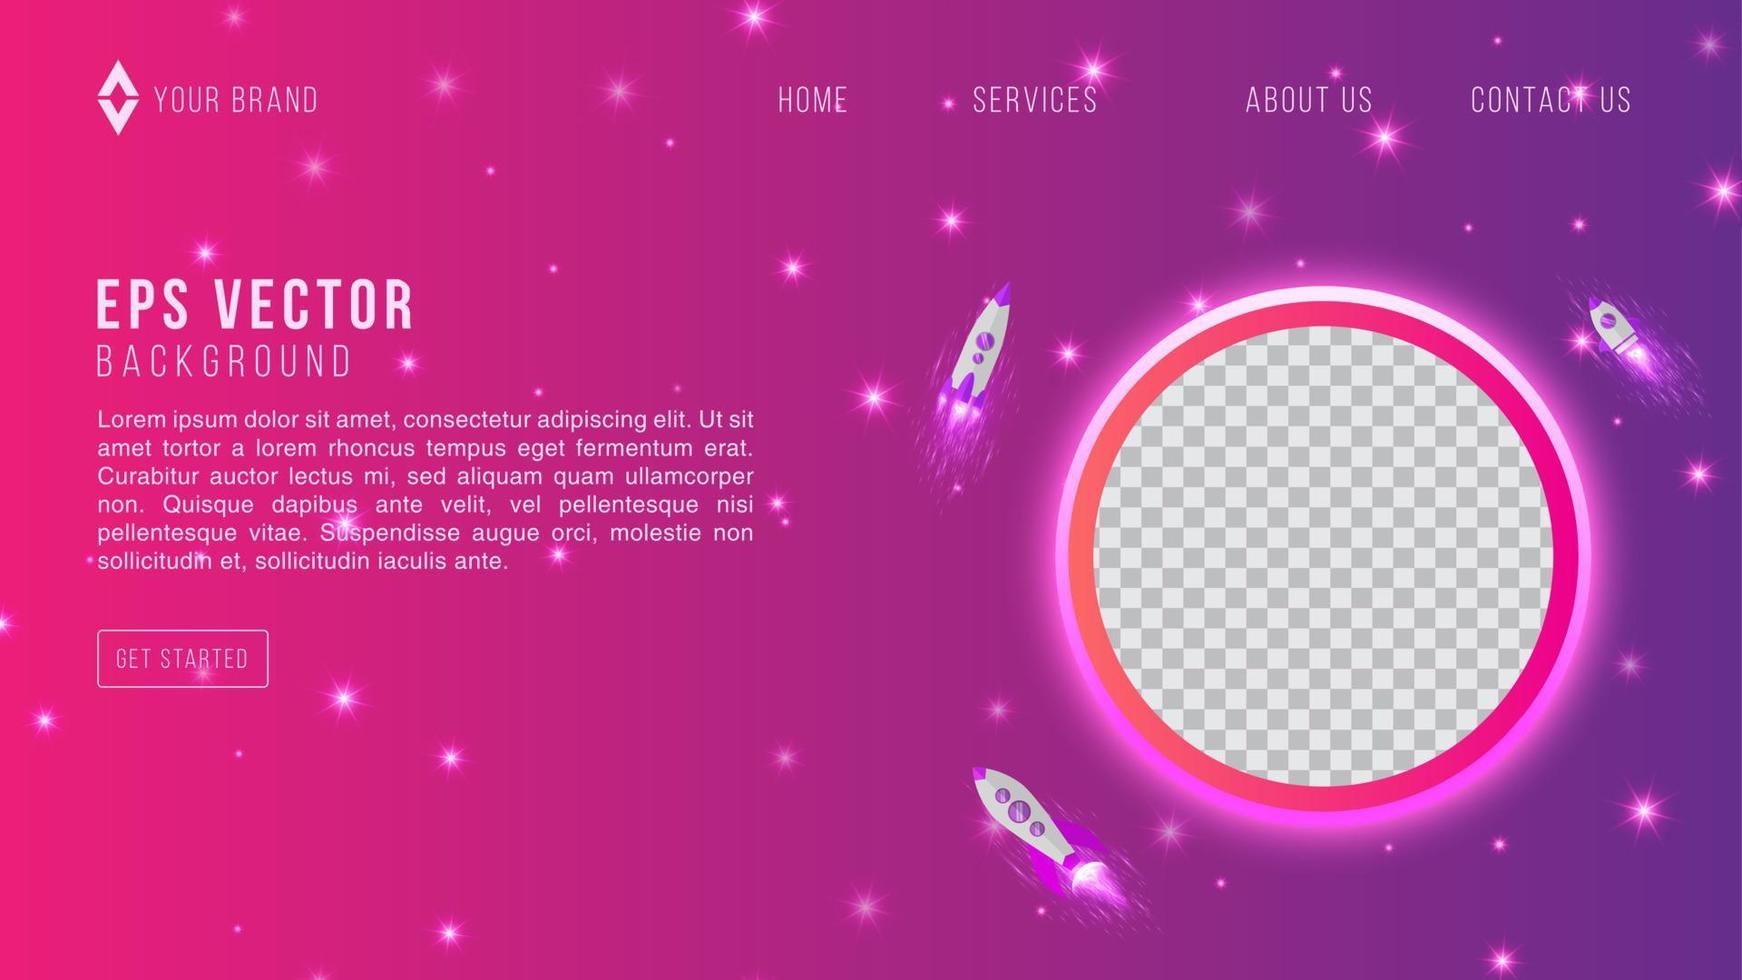 modelo de design da web de espaço gradiente rosa roxo fundo abstrato eps 10 vetor para layout do site, página de destino, página inicial, página da web de volta ao solo